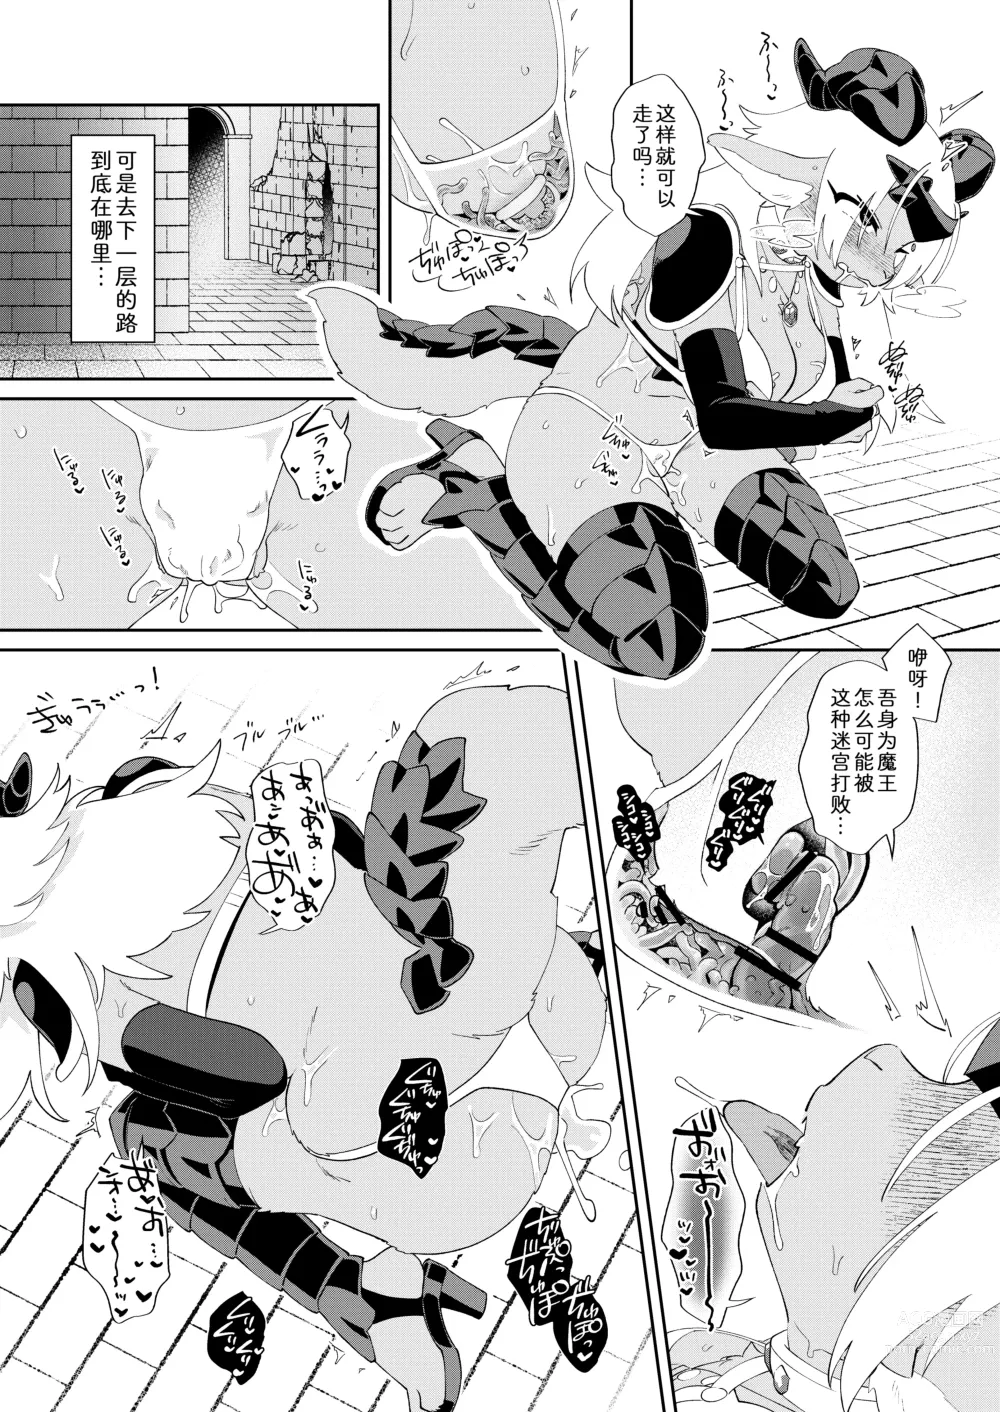 Page 17 of doujinshi 因为是魔王所以说色情迷宫什么的当然随便通关了